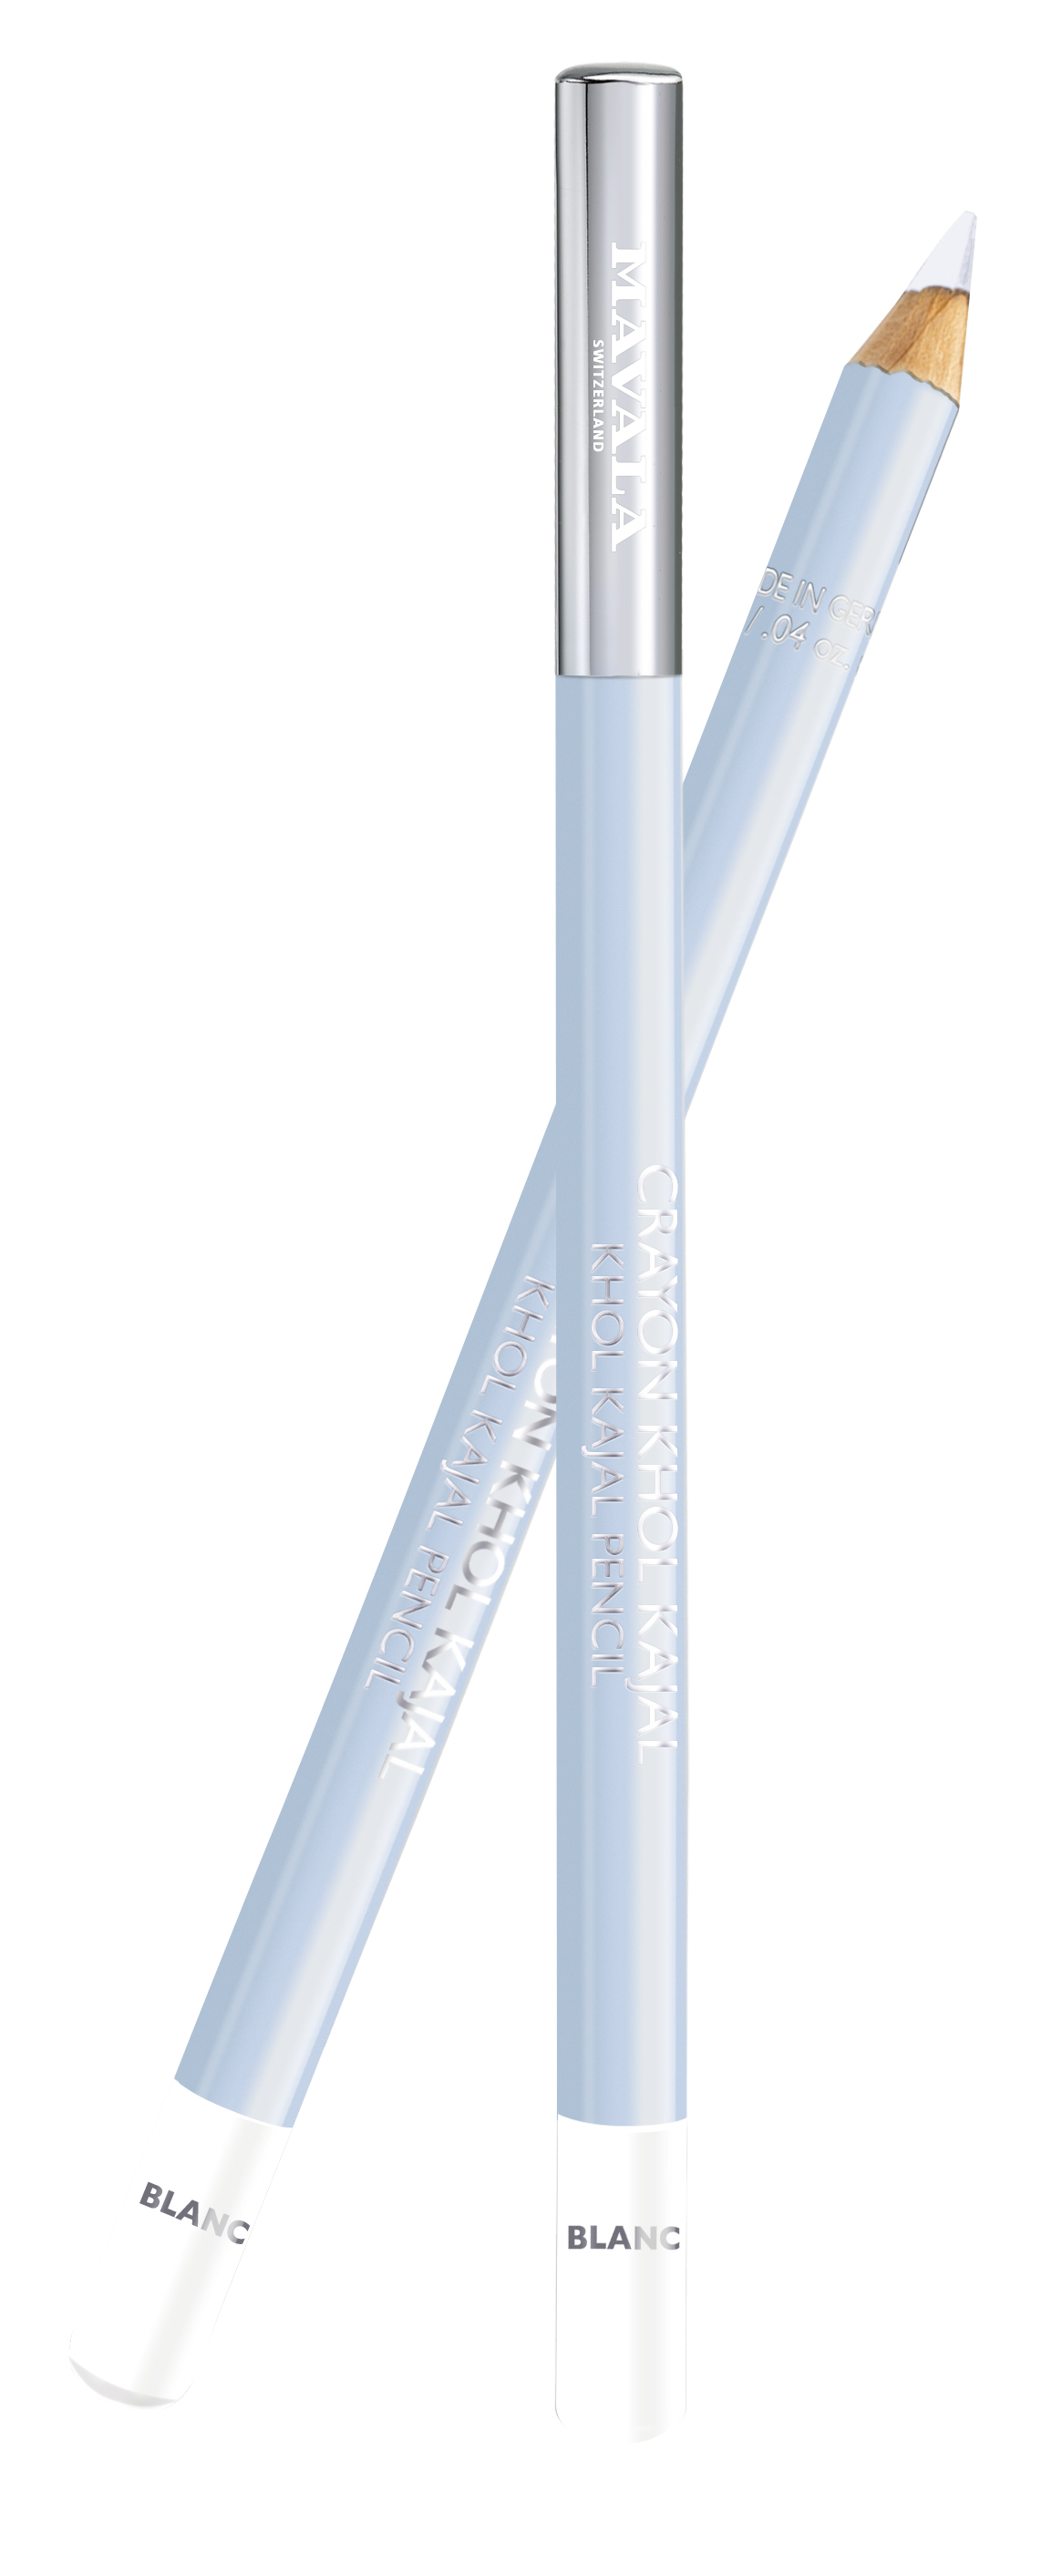 935.05 KHÔL KAJAL - Stift - Blanc (weiß) - Augenkontur-Stift für einen strahlend schönen Blick - Vegan